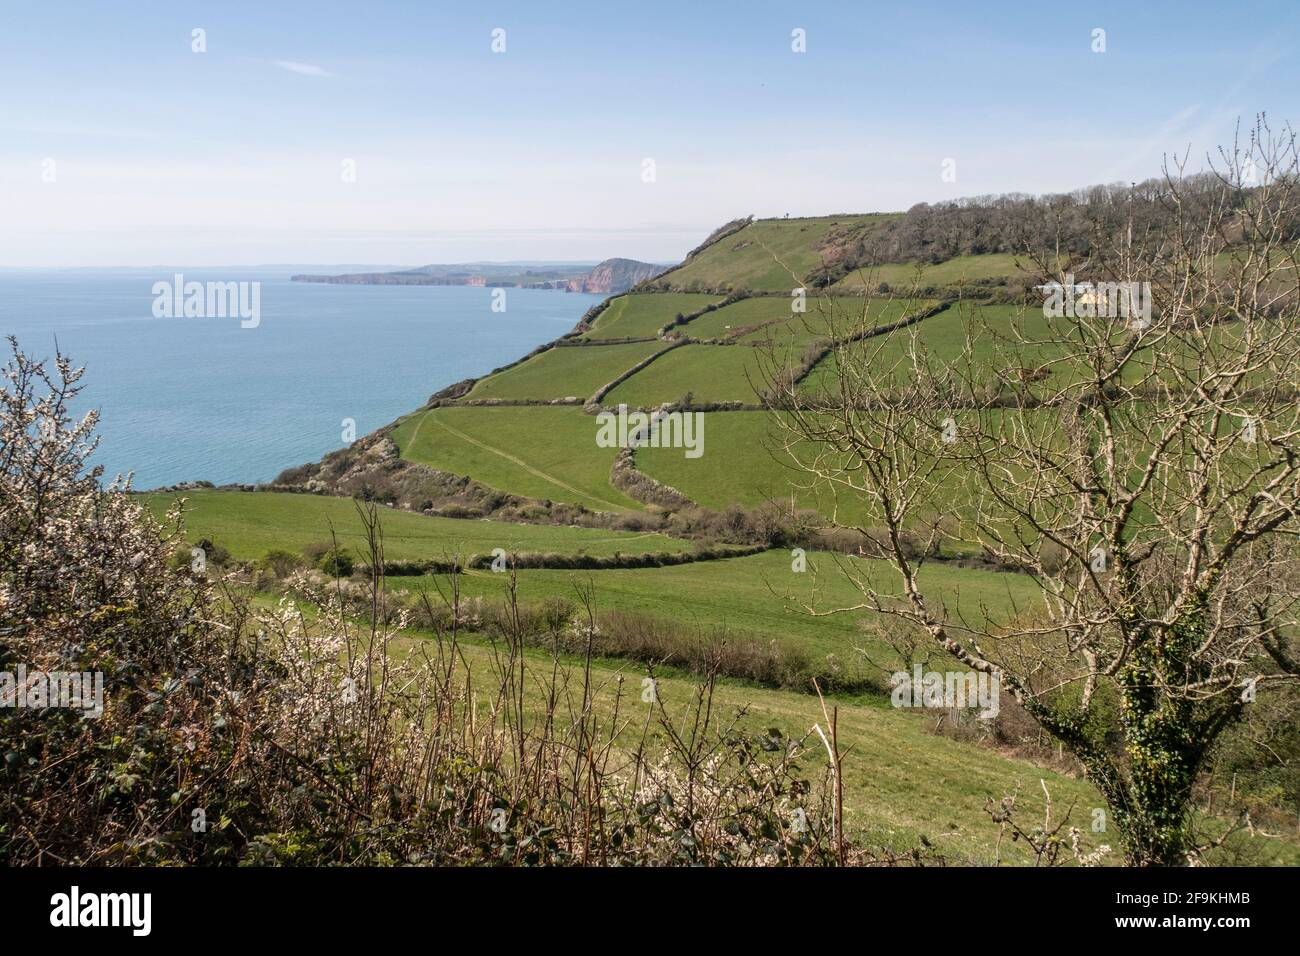 Vue depuis le sentier de randonnée South West Coastal route traversant les champs jusqu'à l'embouchure de Salcombe, près de Sidmouth, Devon. Banque D'Images